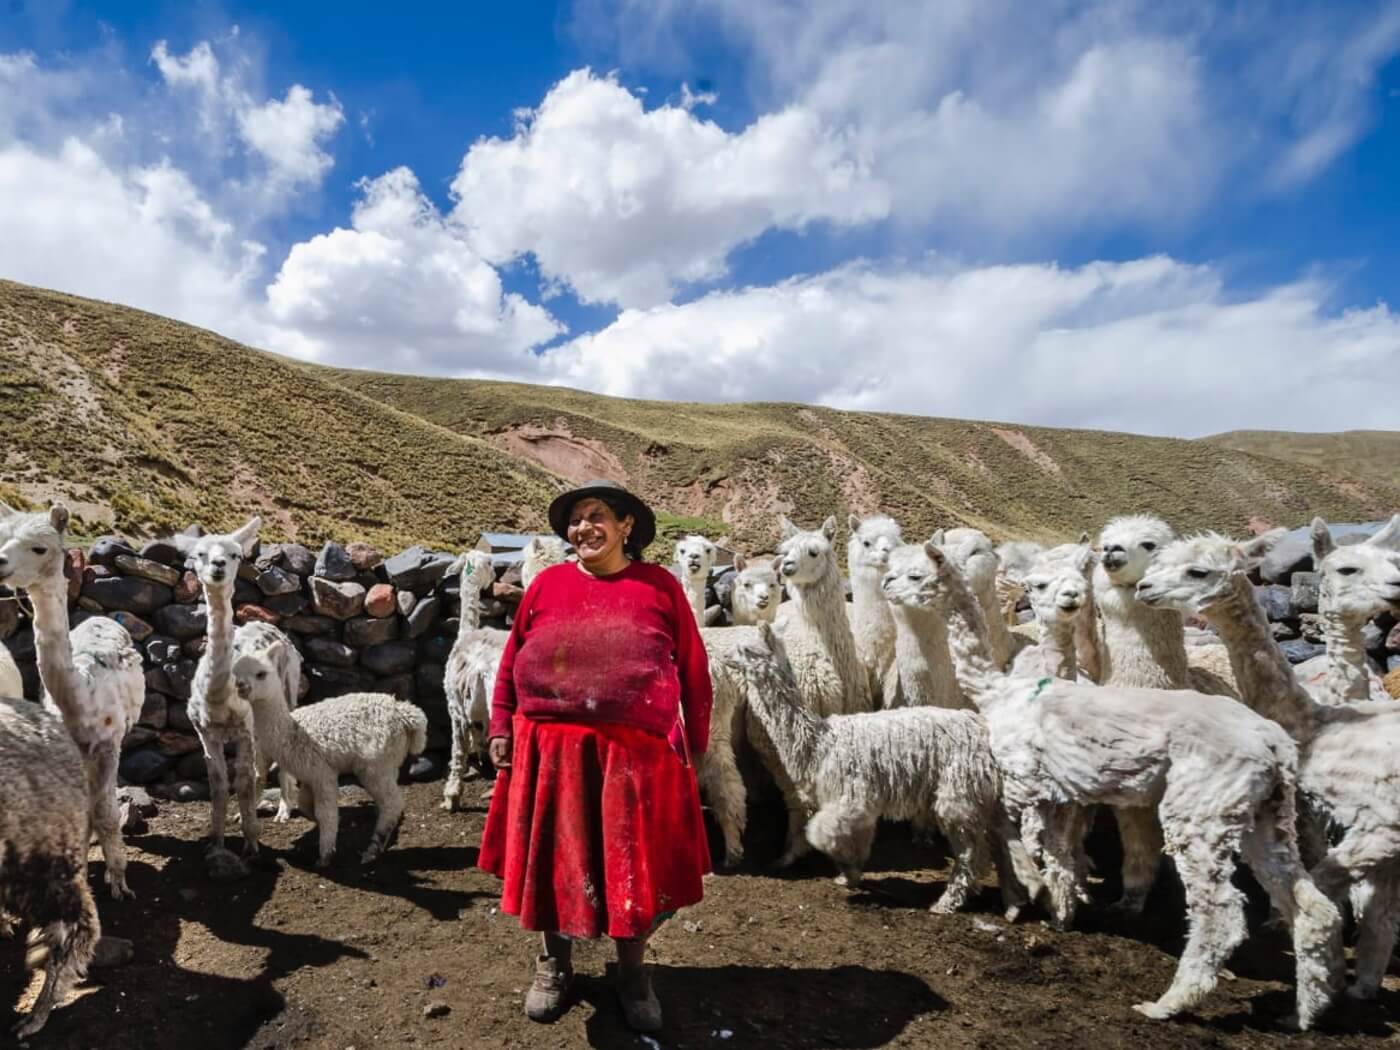 paturi din lana de alpaca - o comoara a anzilor ecuadorieni